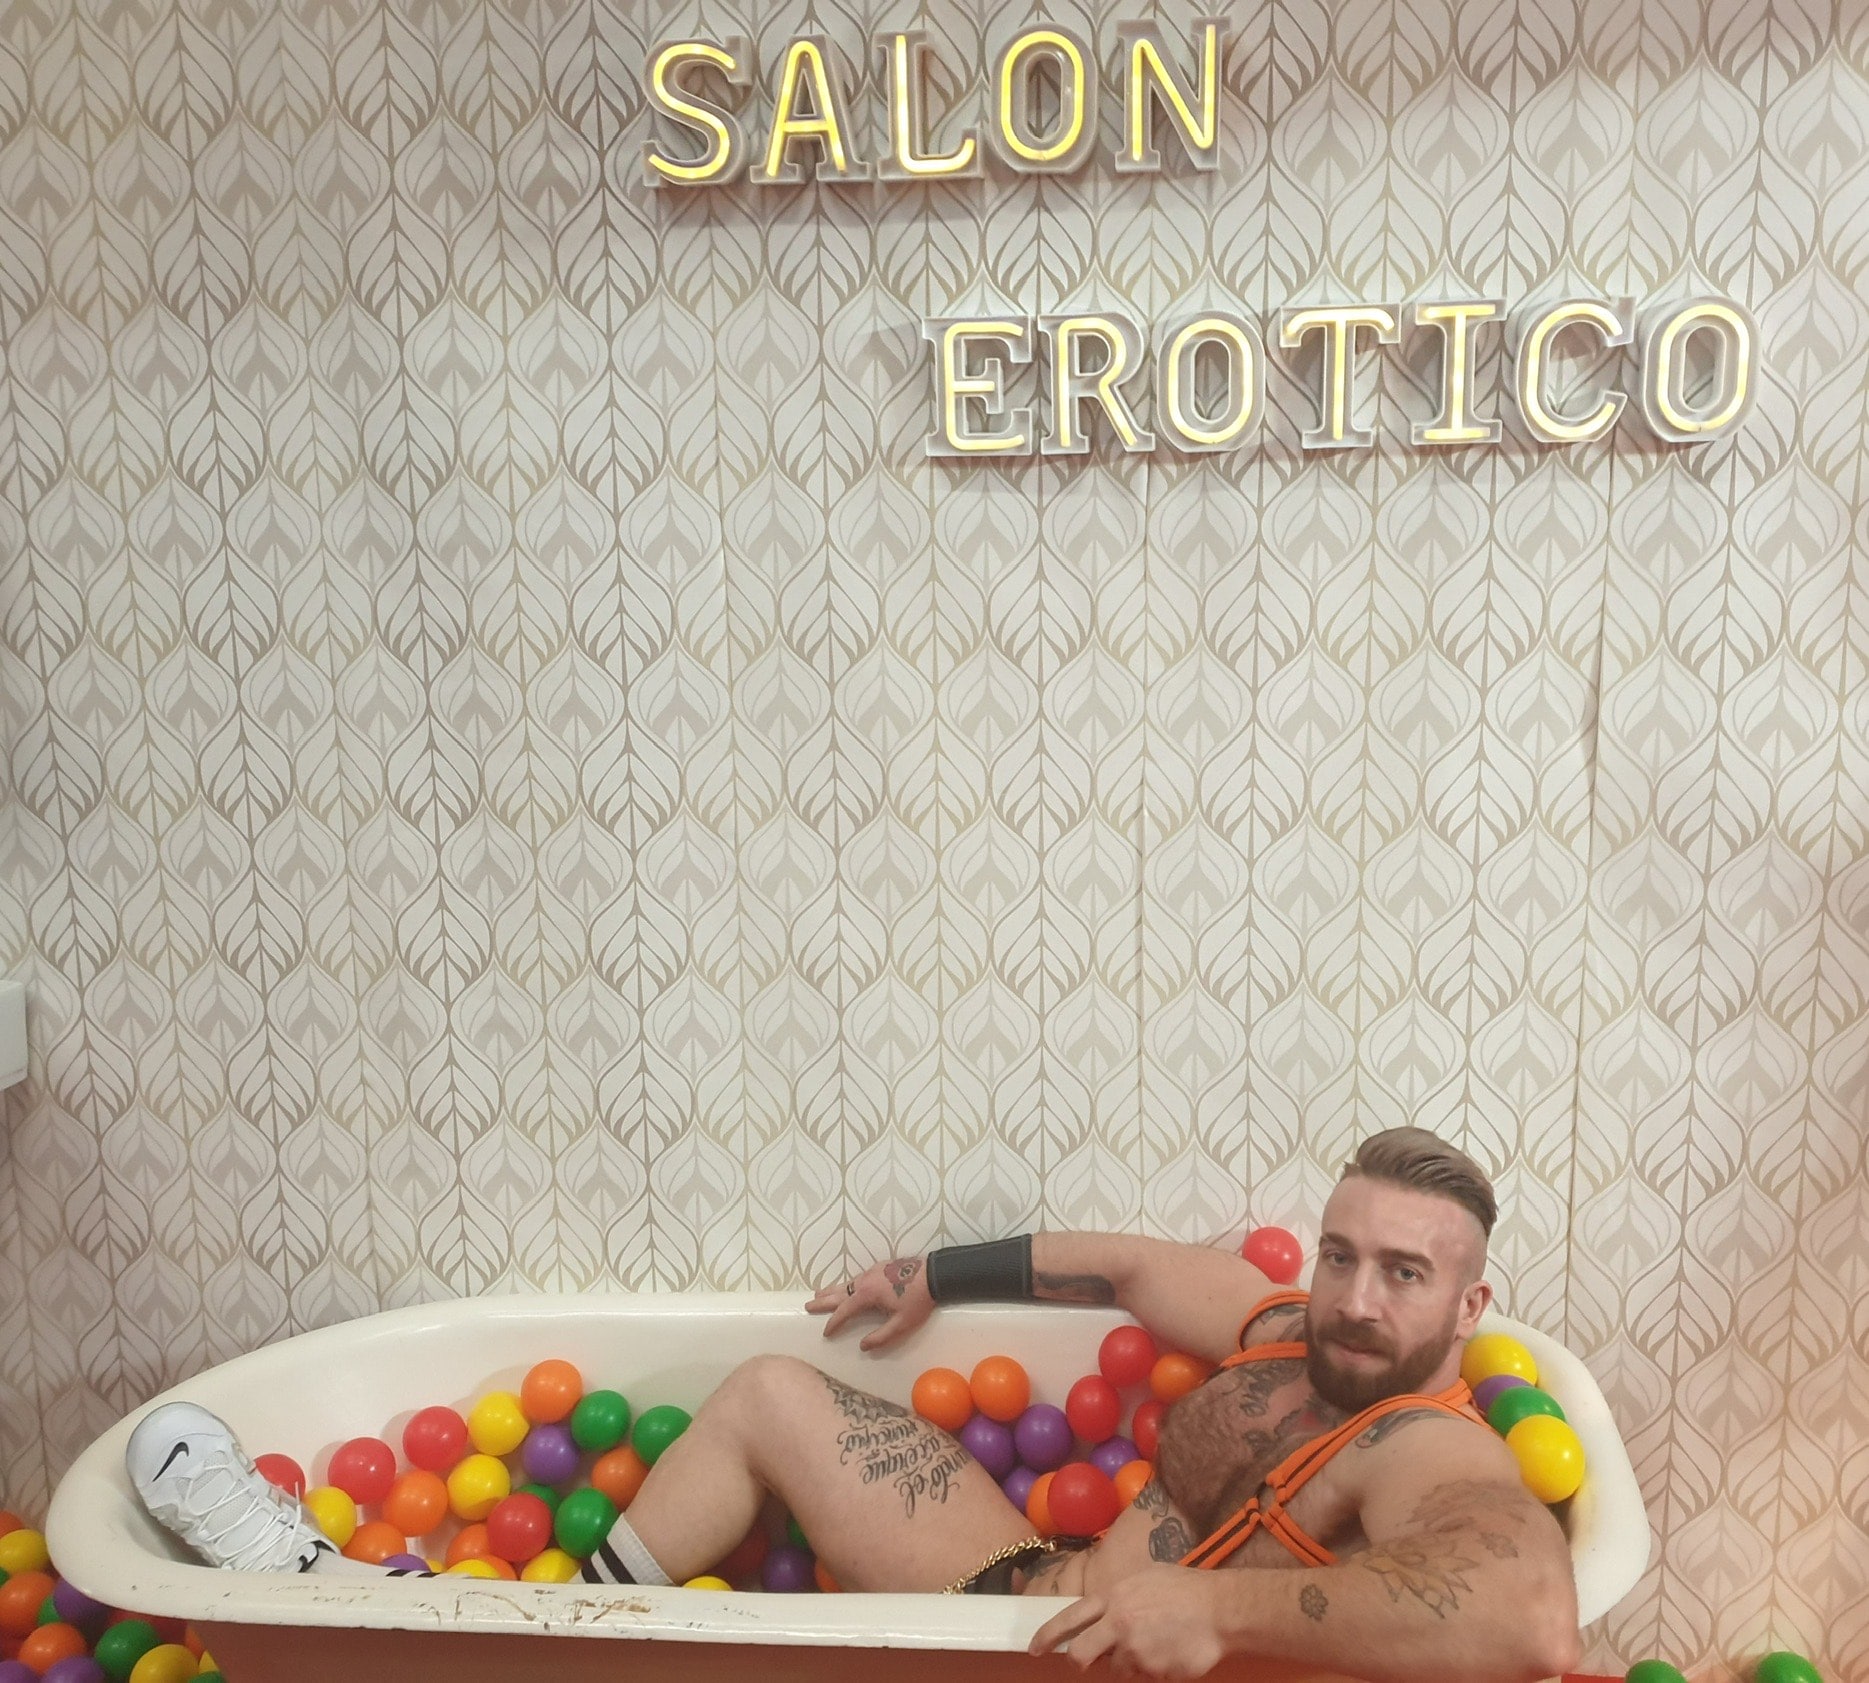 Manuel Scalco lying in a bathtub.